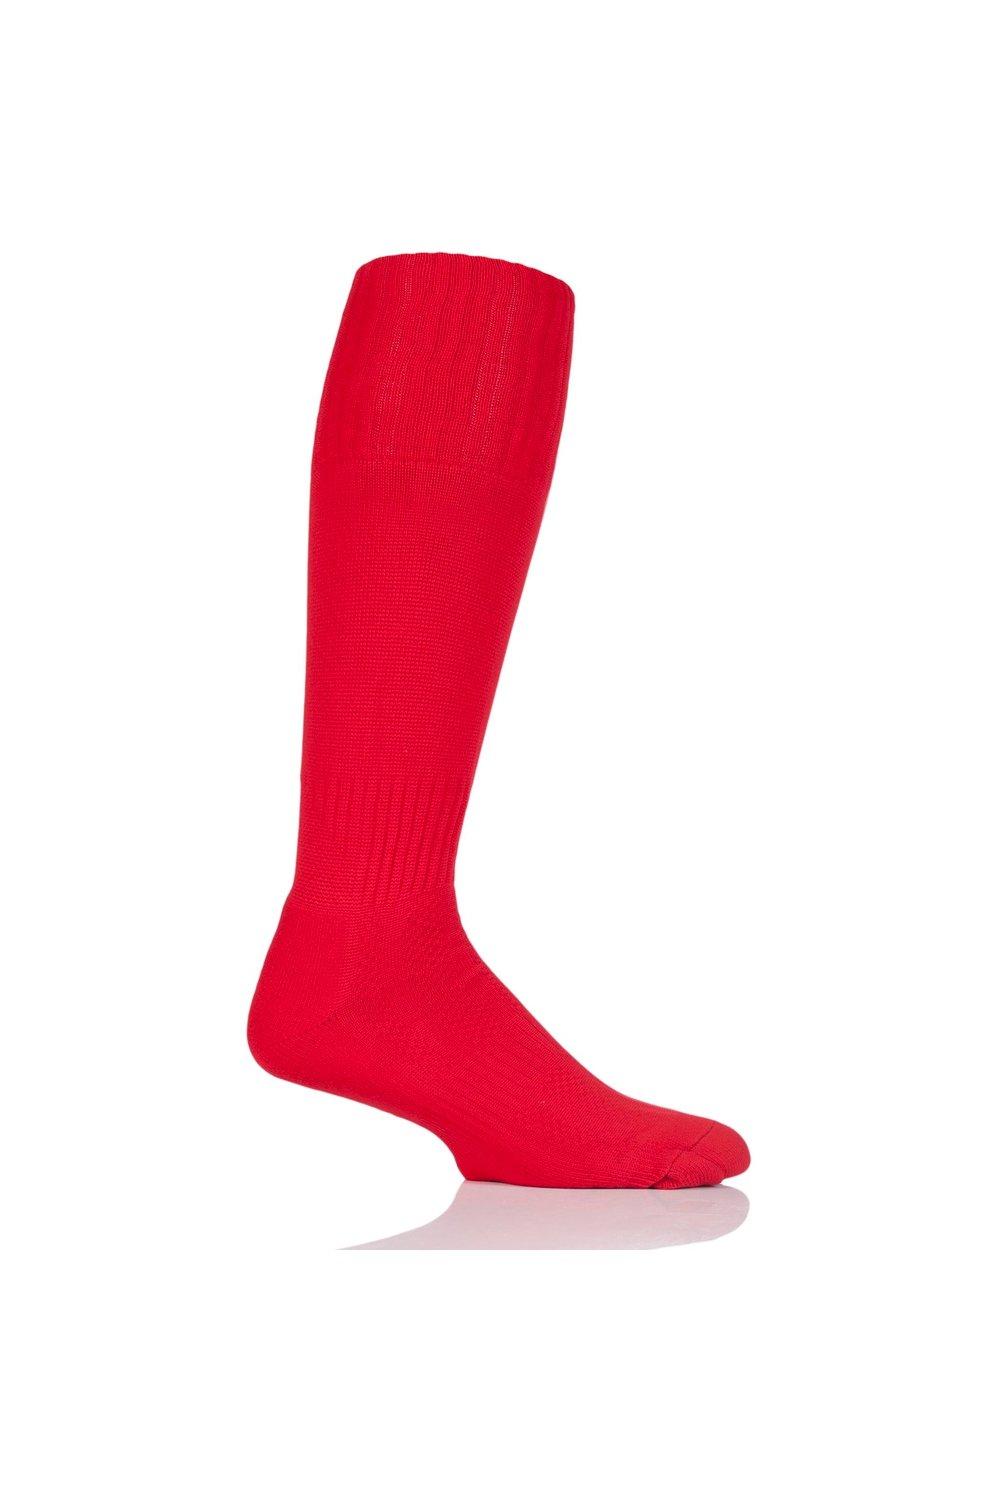 1 пара простых футбольных носков производства Великобритании. SOCKSHOP of London, красный